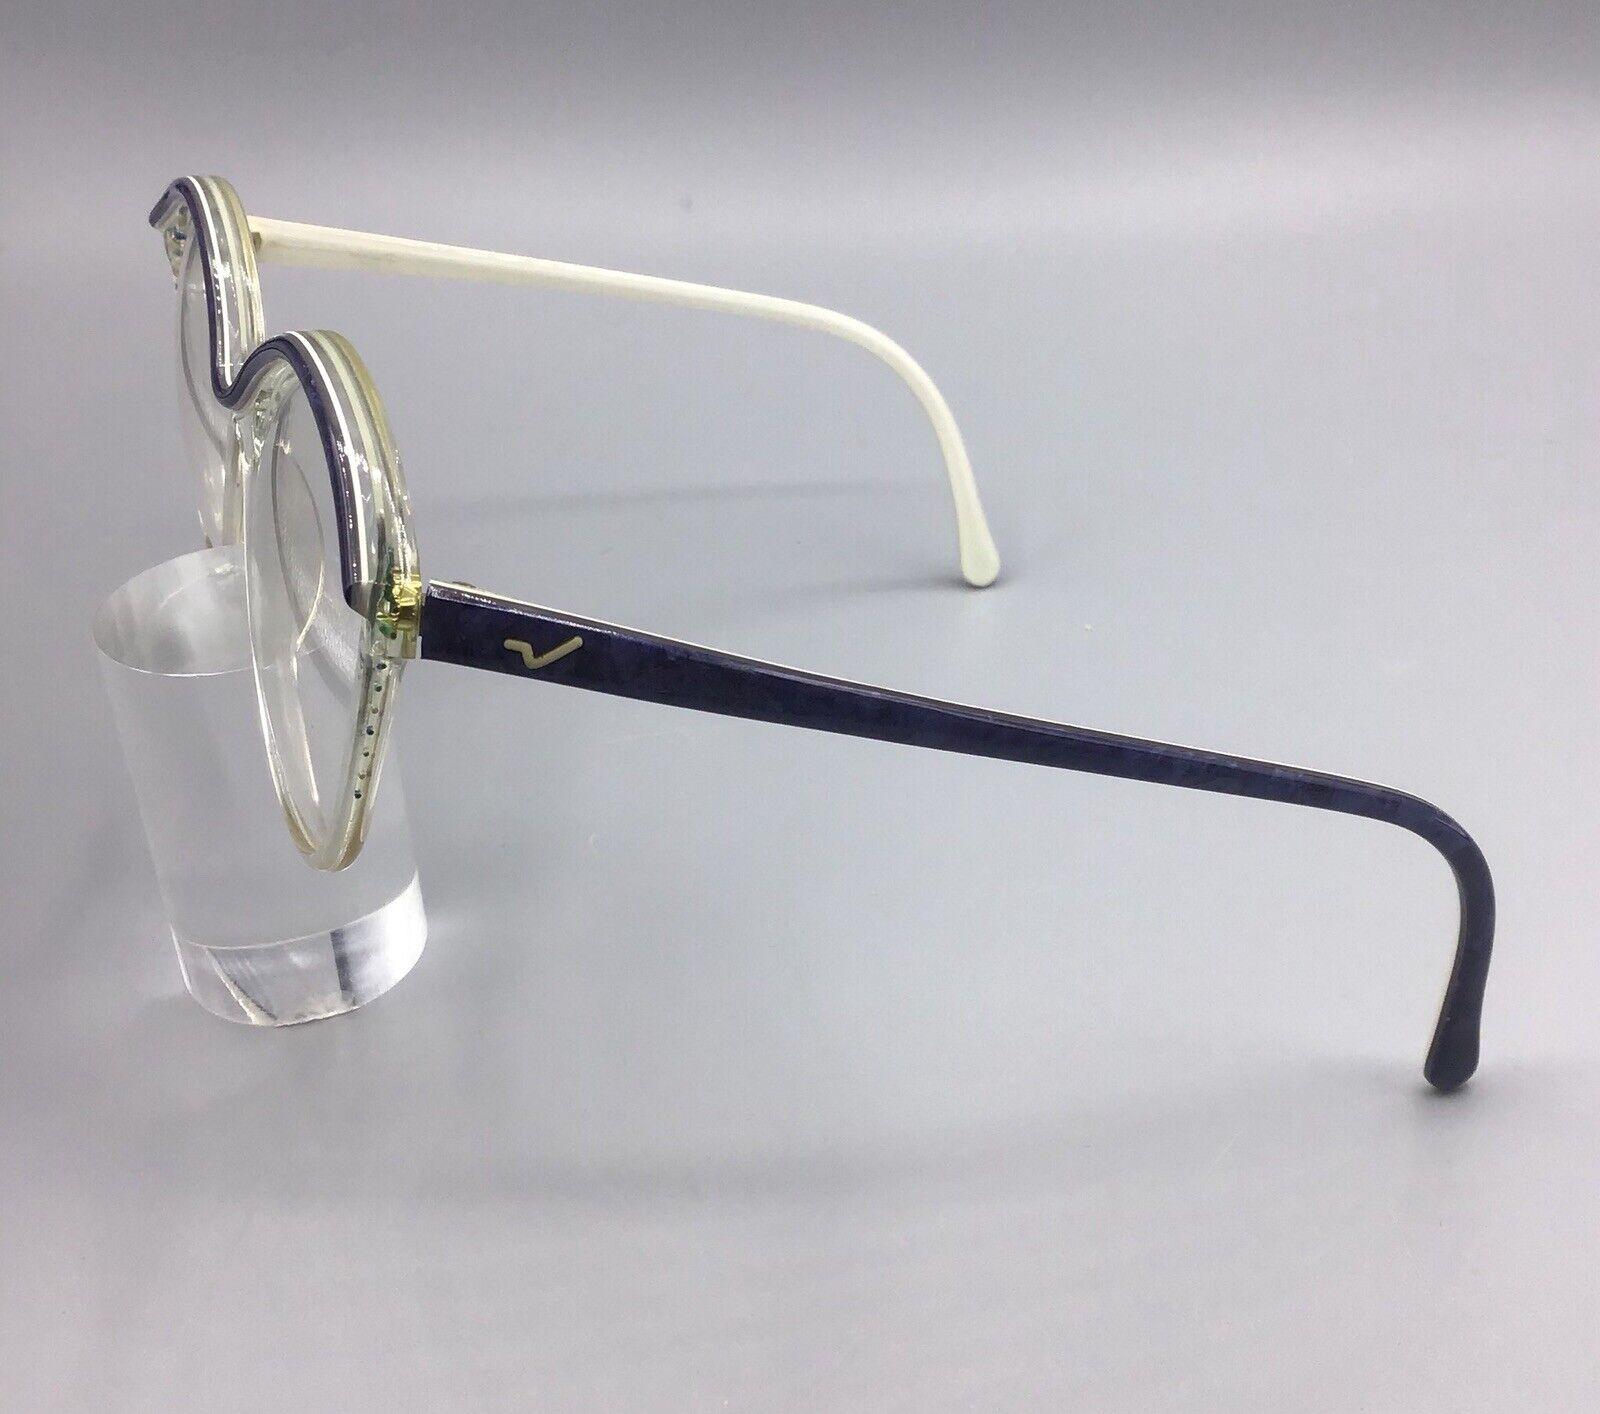 vogart occhiale vintage eyewear frame model 319 brillen lunettes